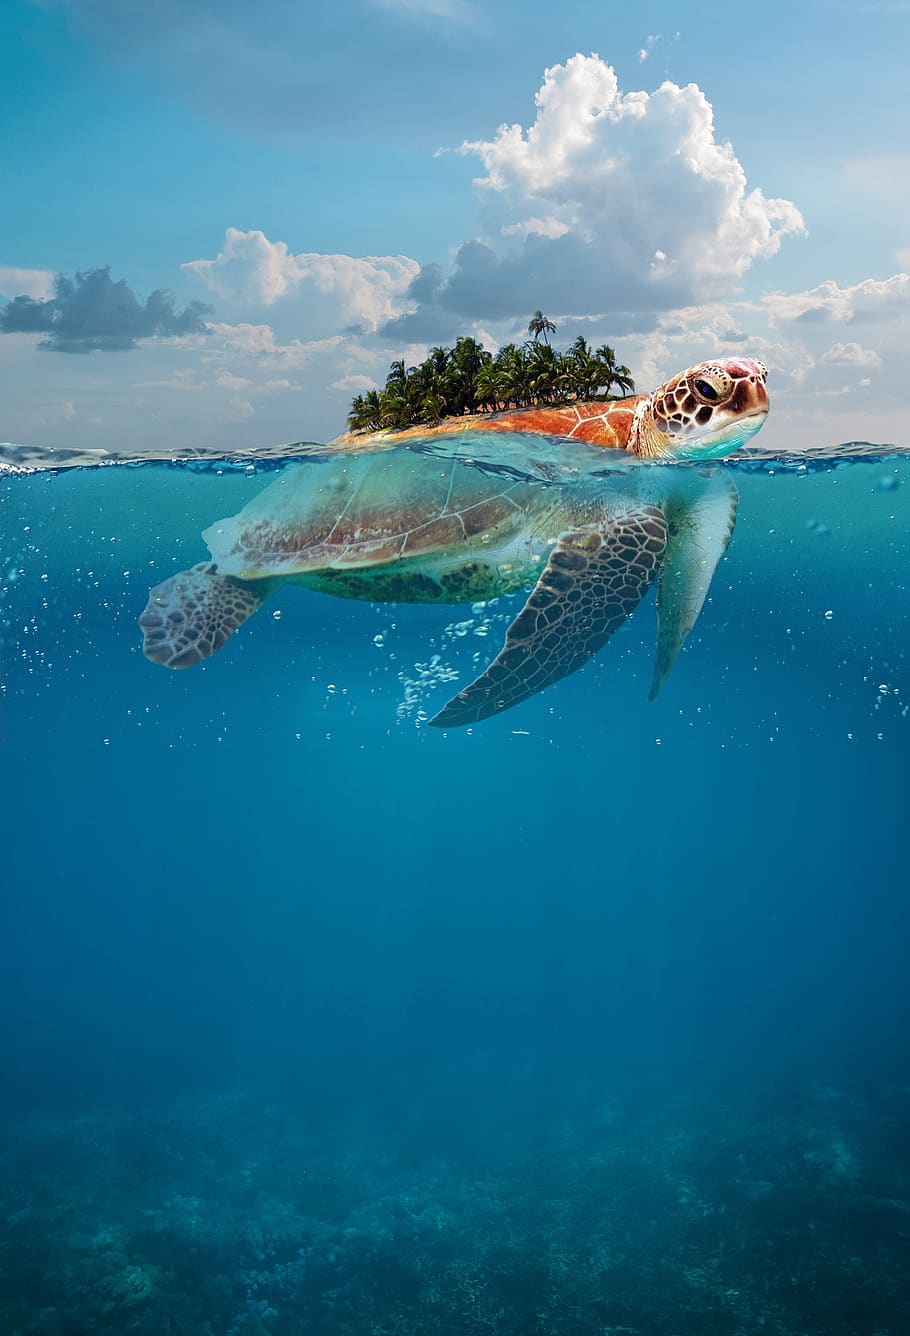 tartaruga, oceano, ilha, subaquática, mar, animais selvagens, natação, marinha, natureza, aquáticos